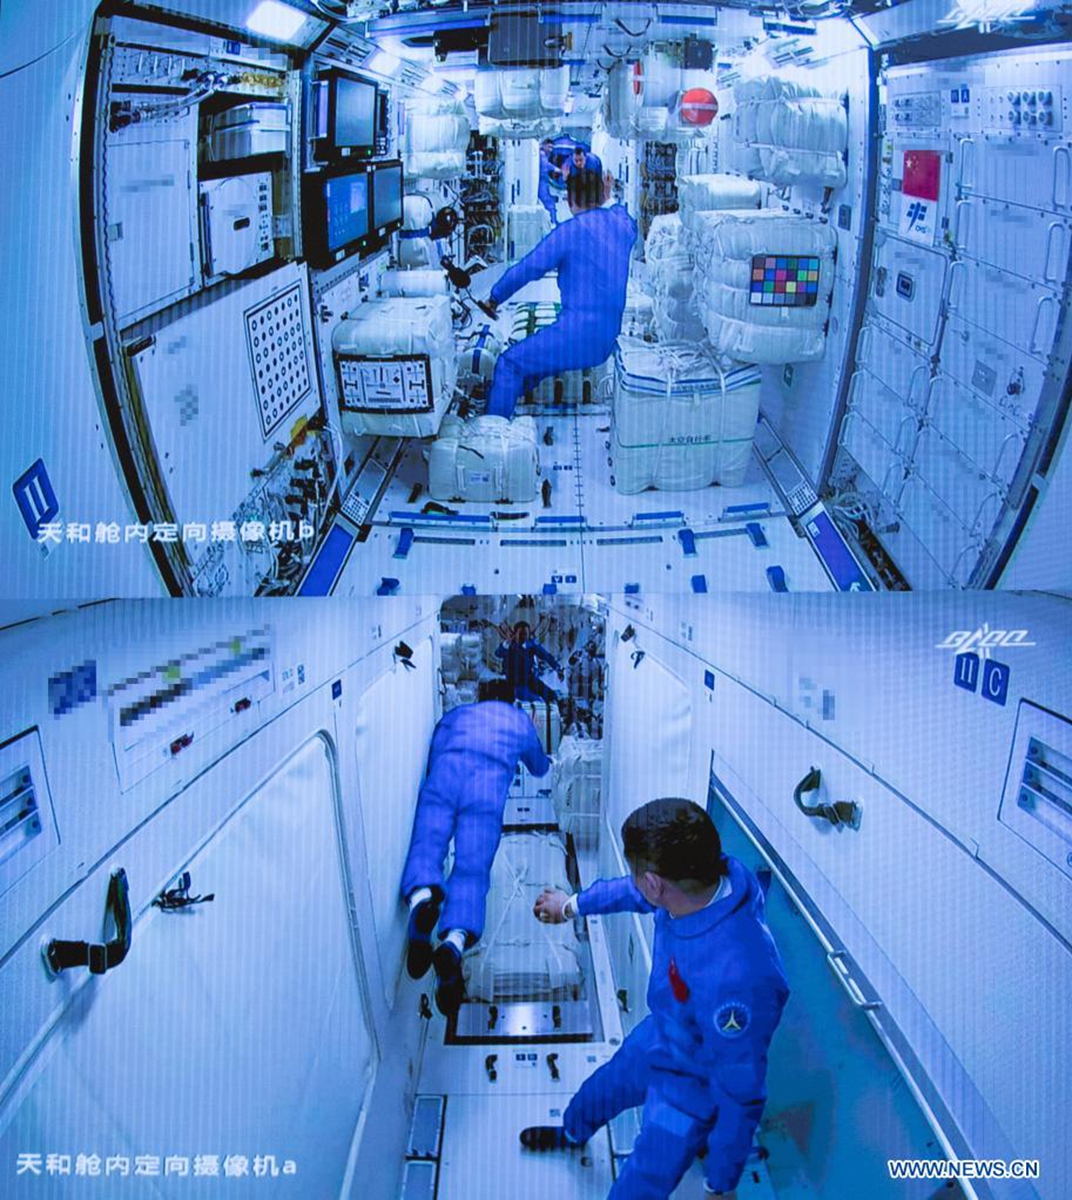 A imagem da tela capturada no Centro de Controle Aeroespacial de Pequim em Pequim, capital da China, em 17 de junho de 2021 mostra três astronautas chineses a bordo da espaçonave Shenzhou-12 entrando no módulo central da estação espacial Tianhe.  Foto: Xinhua